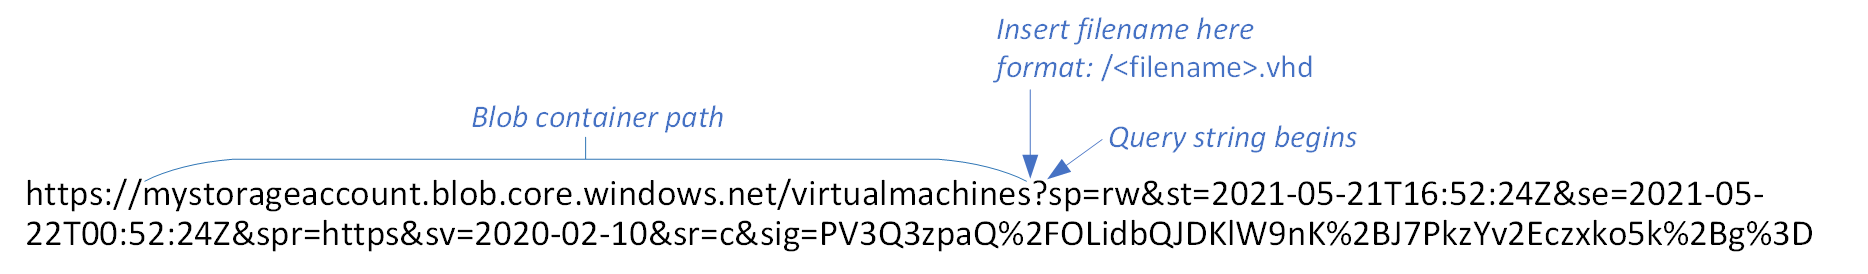 Grafik URL SAS Blob, dengan jalur kontainer dan tempatkan untuk menyisipkan nama file baru dengan label